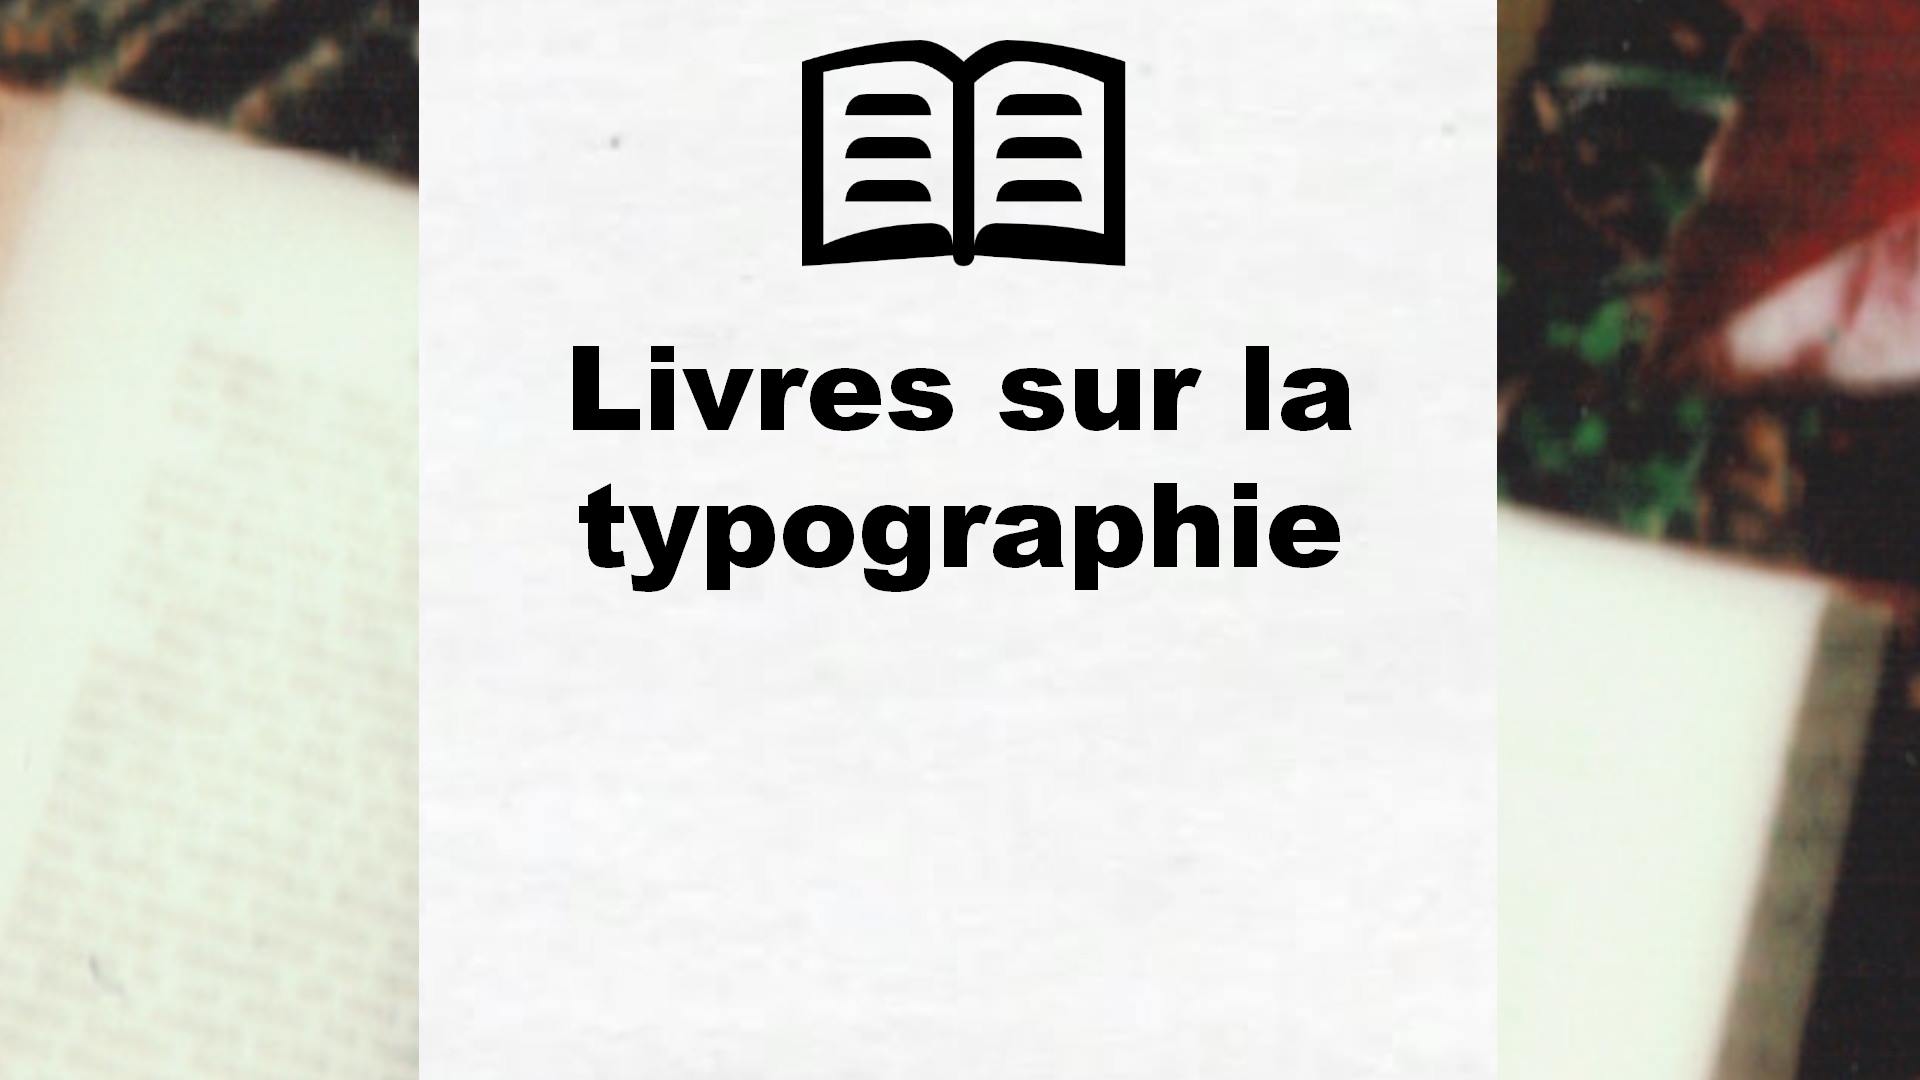 Livres sur la typographie